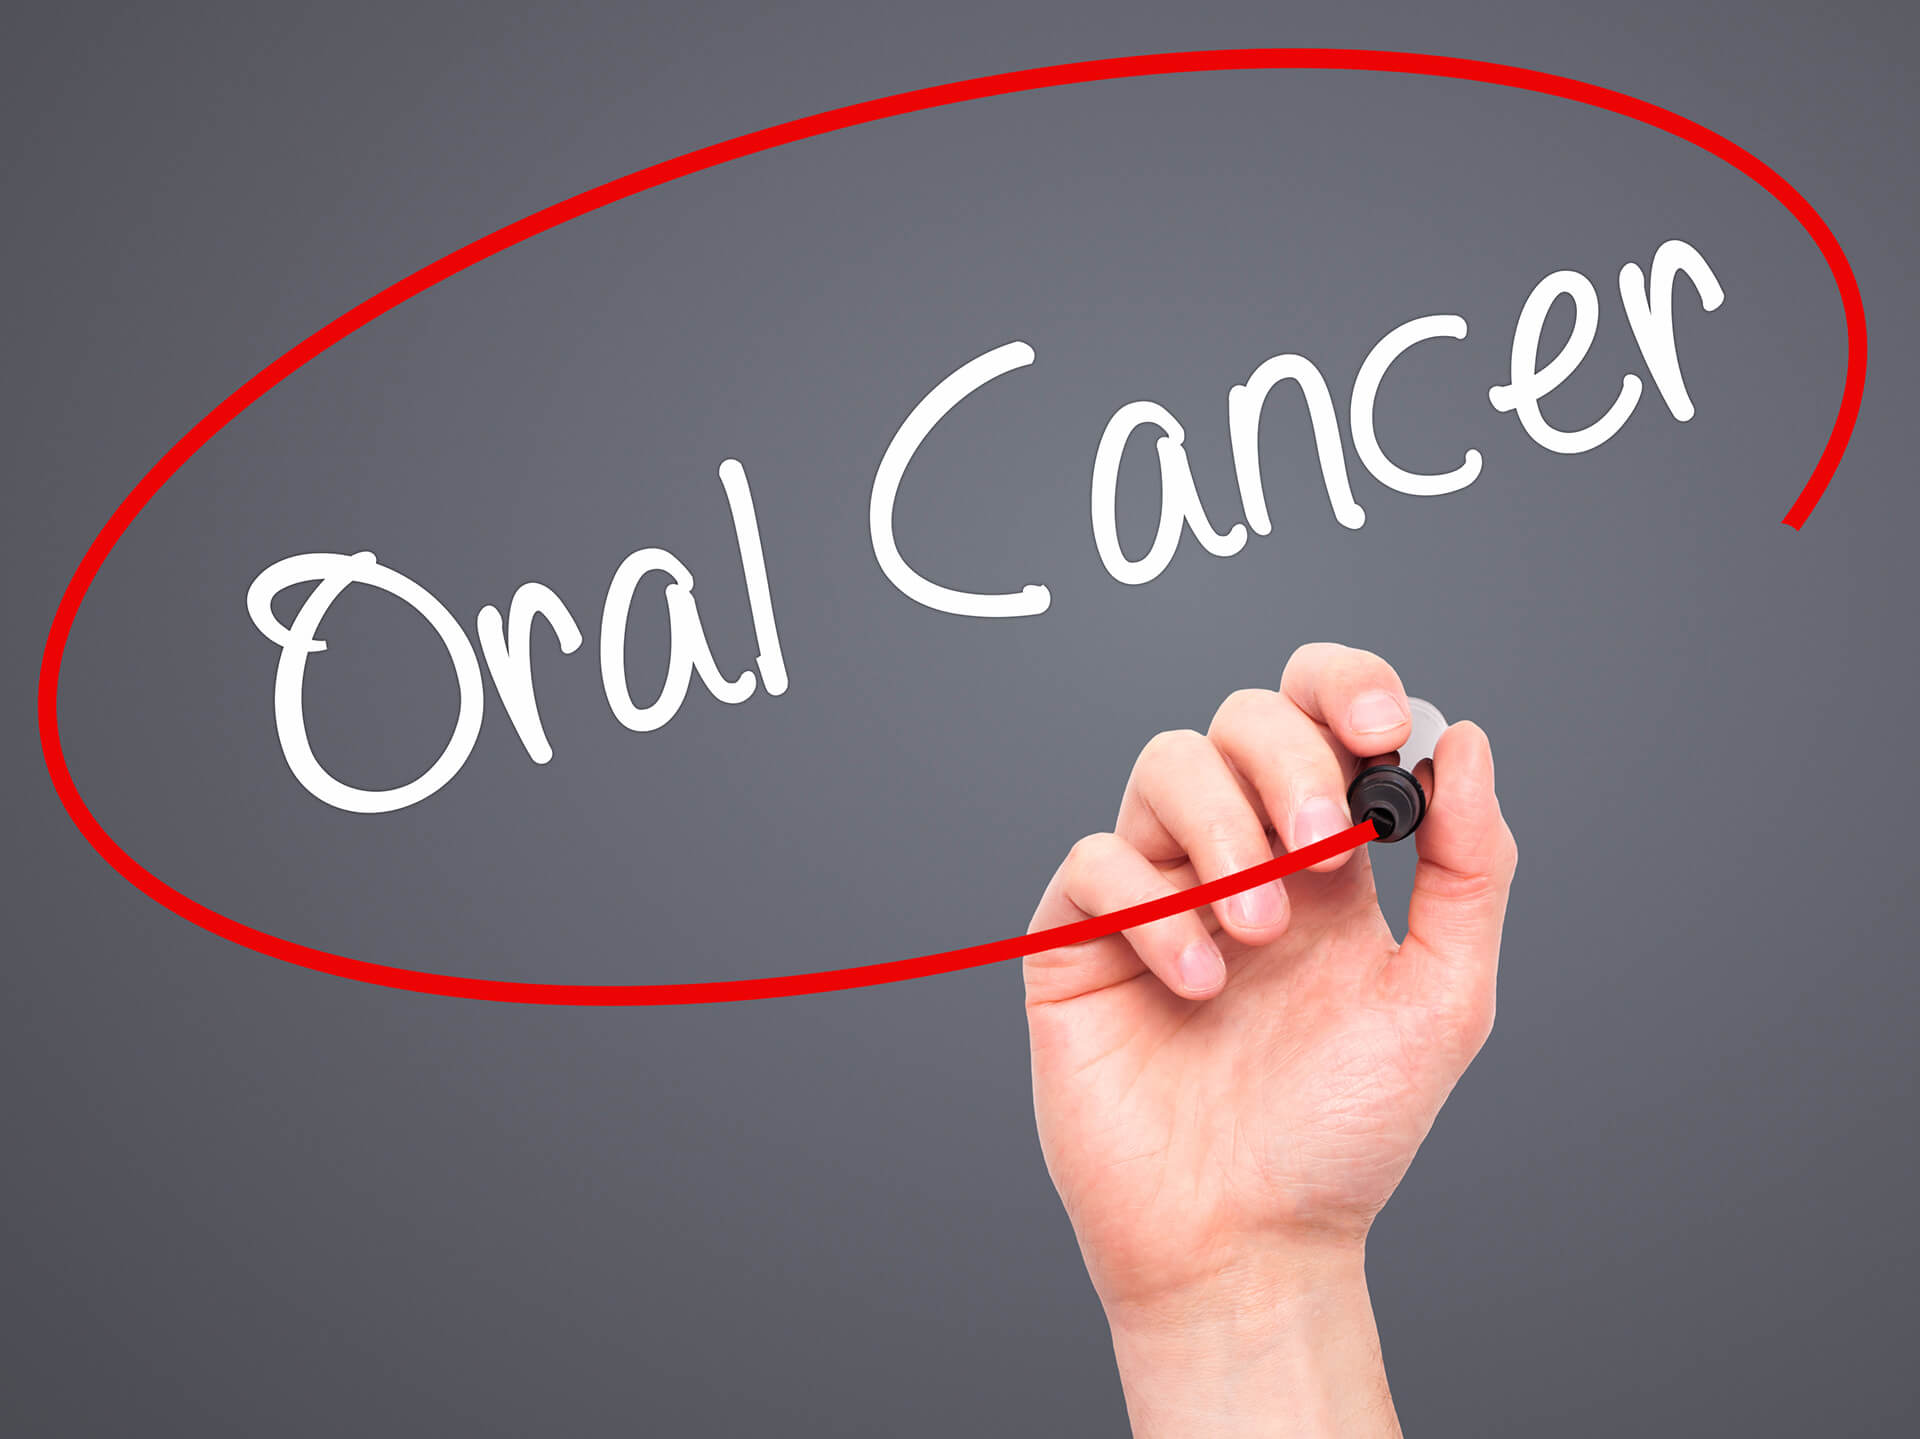 oral cancer sign